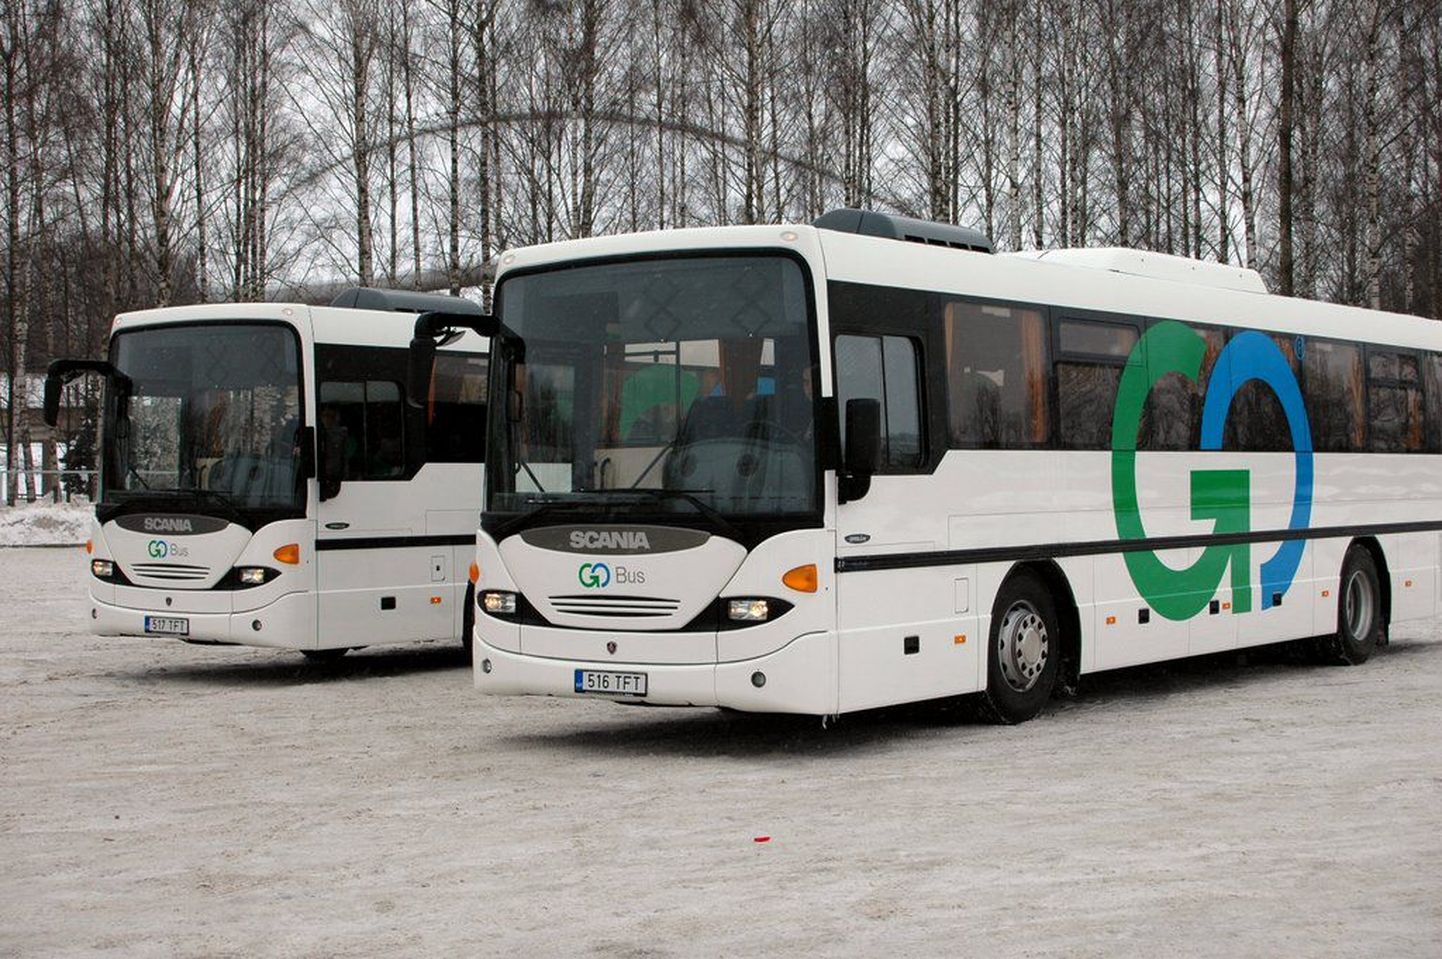 Praegu isapuhkusel viibiv Saaremaa Gobusi juht tunnistab, et tema tegigi ettepaneku liinikärbeteks, mis 14 juulist jõustusid, kaasaarvatud Undva bussiliinide kohta.